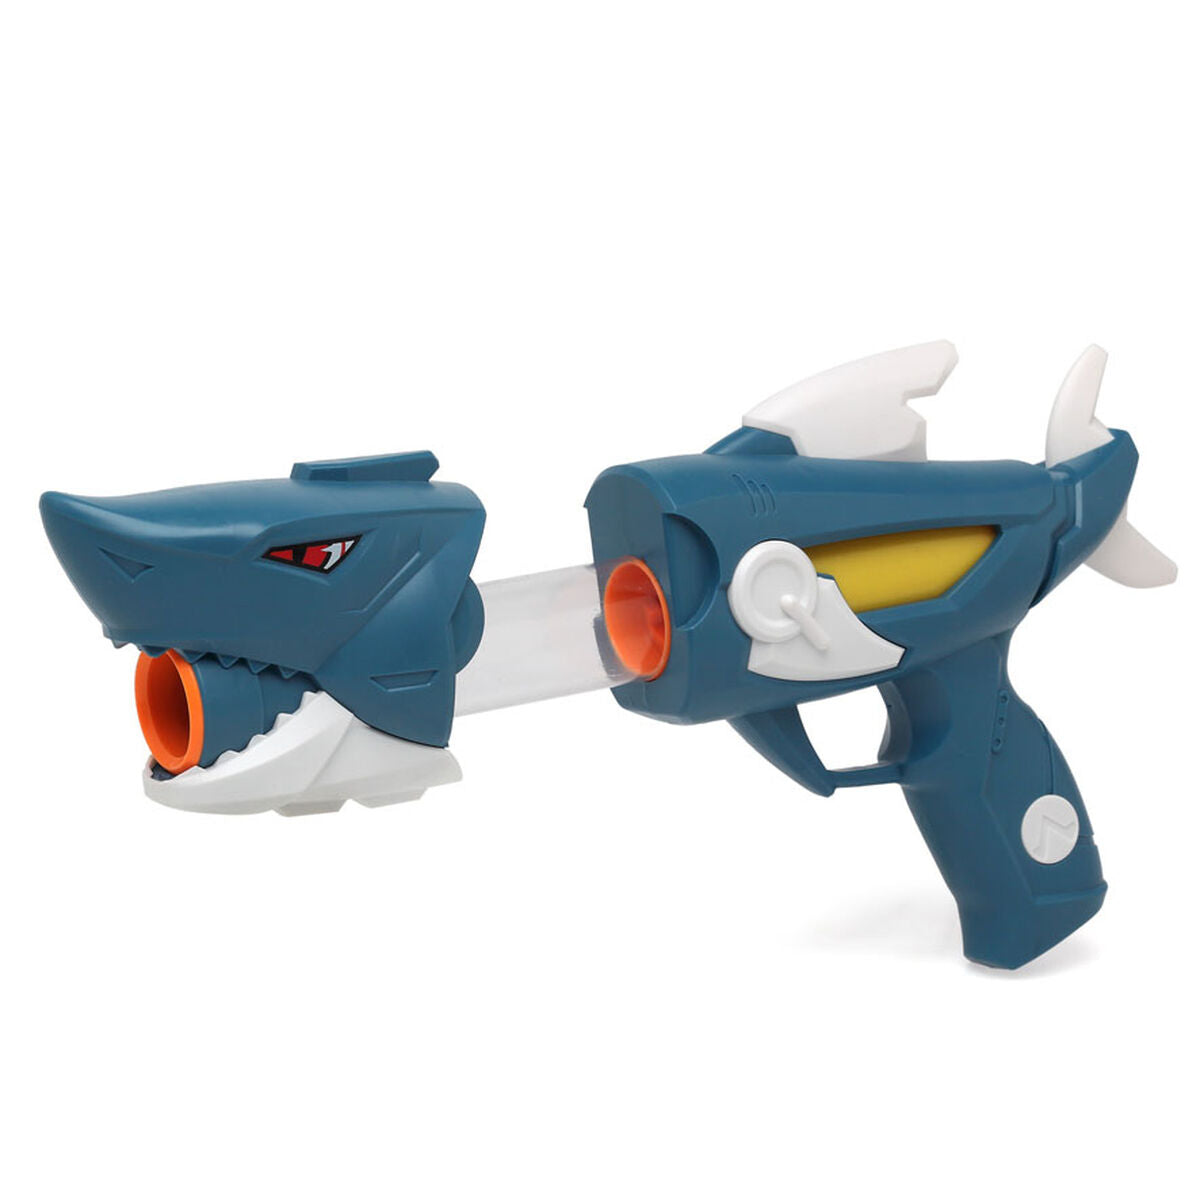 Toy guns Shark